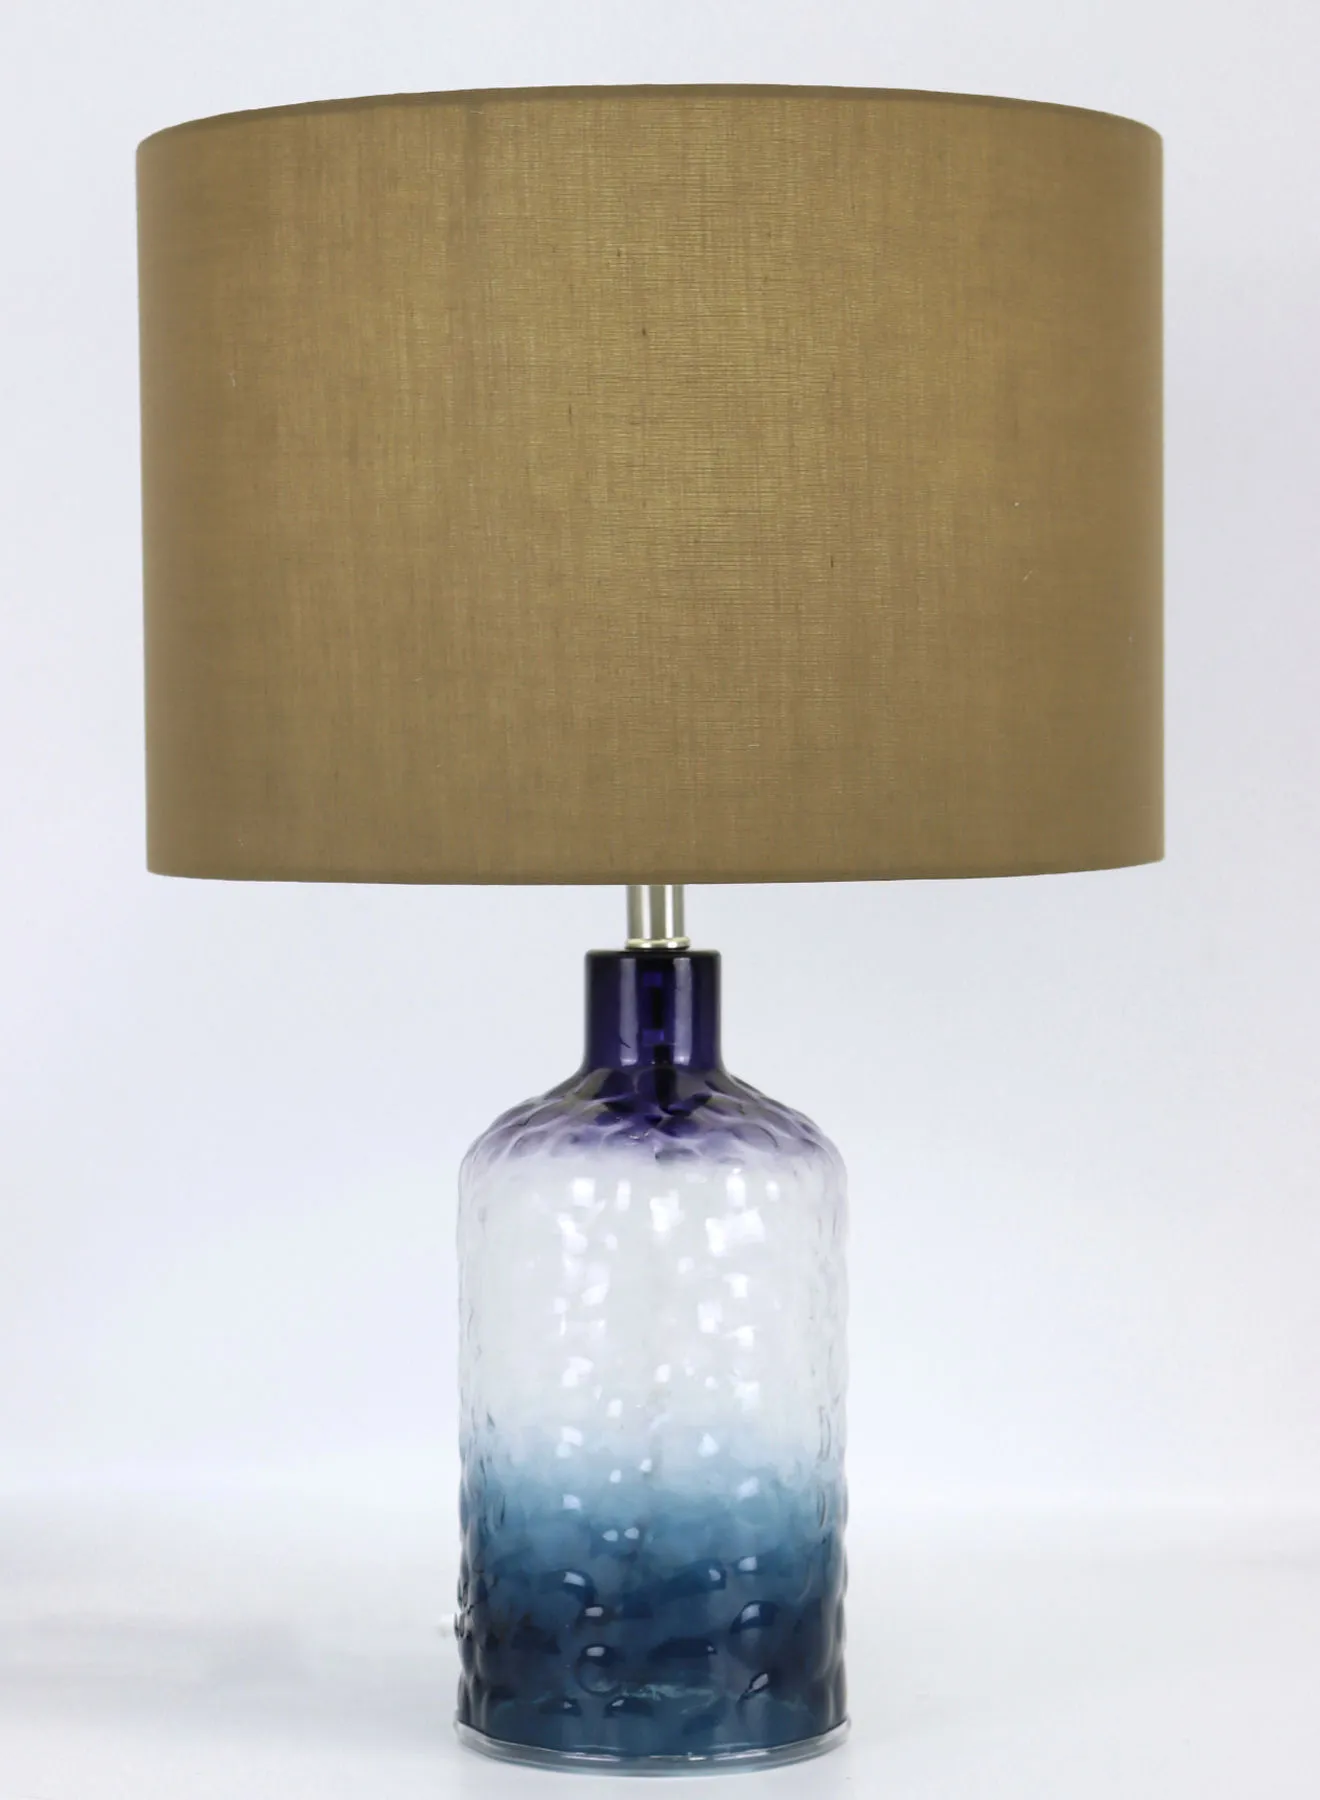 مصباح طاولة زجاجي بتصميم عصري من المد والجزر ، مادة فاخرة فريدة من نوعها ذات جودة عالية لمنزل أنيق مثالي RSN71029 أزرق 13 × 20.2